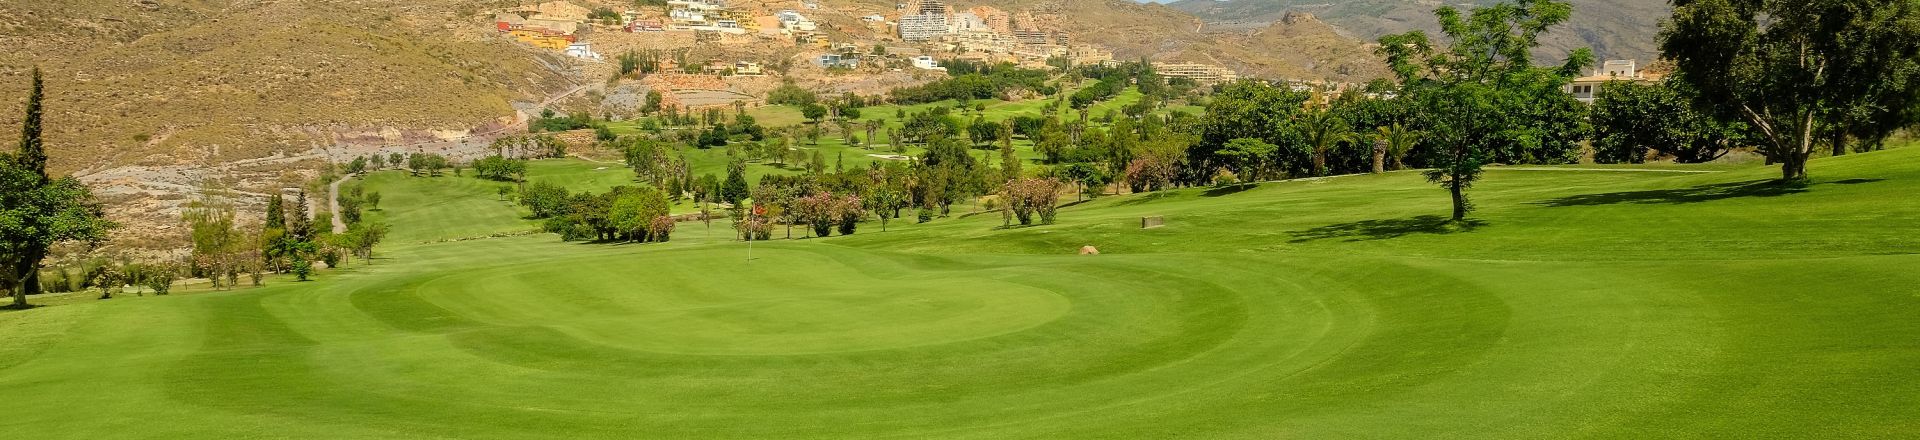 La Envia golf course in Costa Almeria, Spain